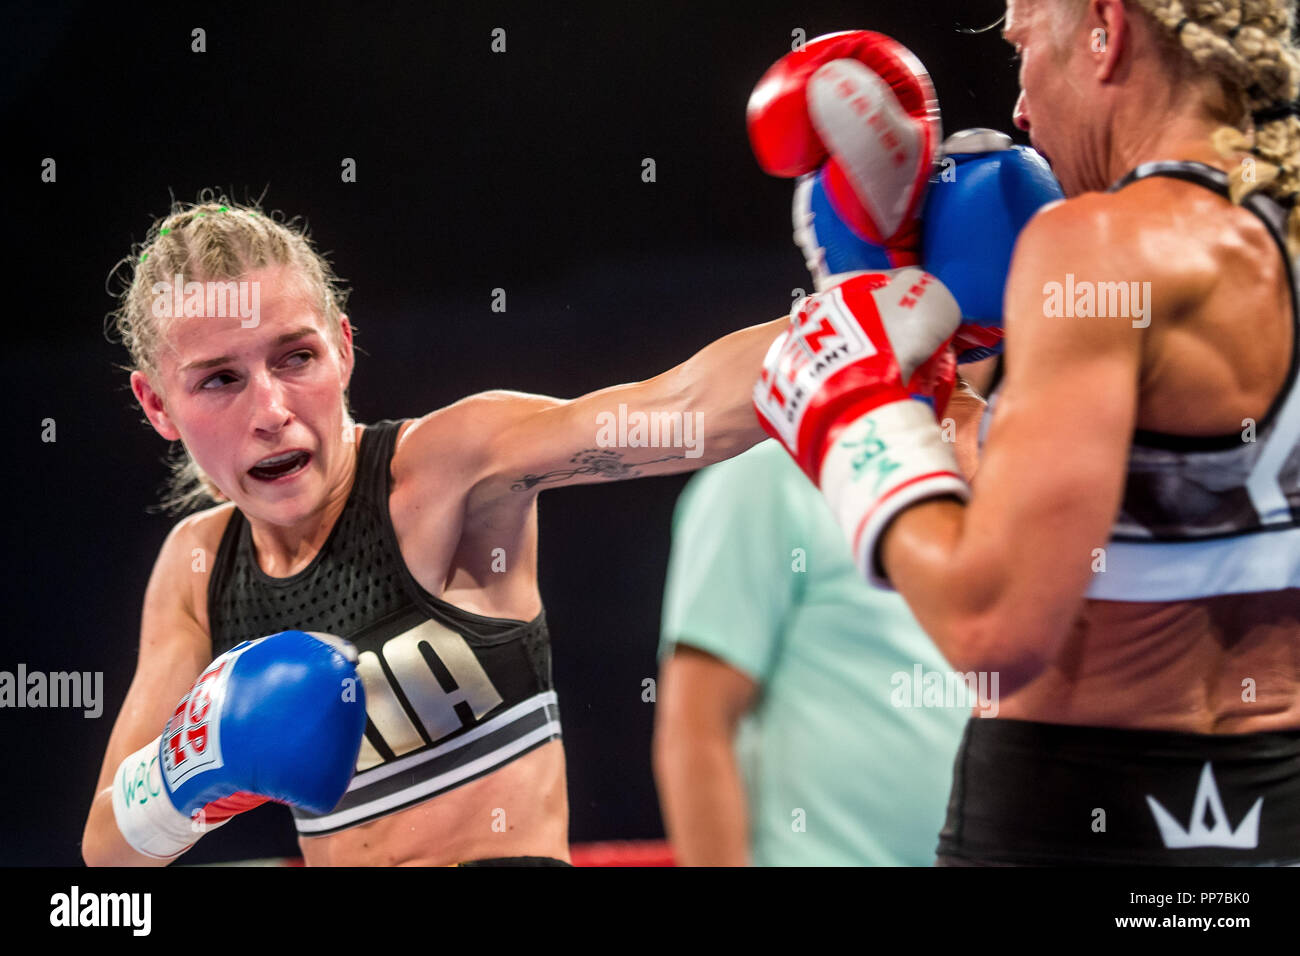 Boxeur tchèque Fabiana Bytyqi (à gauche) bat Denise Château (GBR) dans leur Minimumweight match de boxe WBC pour femme titre de champion du monde à la boxe professionnelle événement en direct à Usti nad Labem, République tchèque le 22 septembre 2018. (CTK Photo/Ondrej Hajek) Banque D'Images